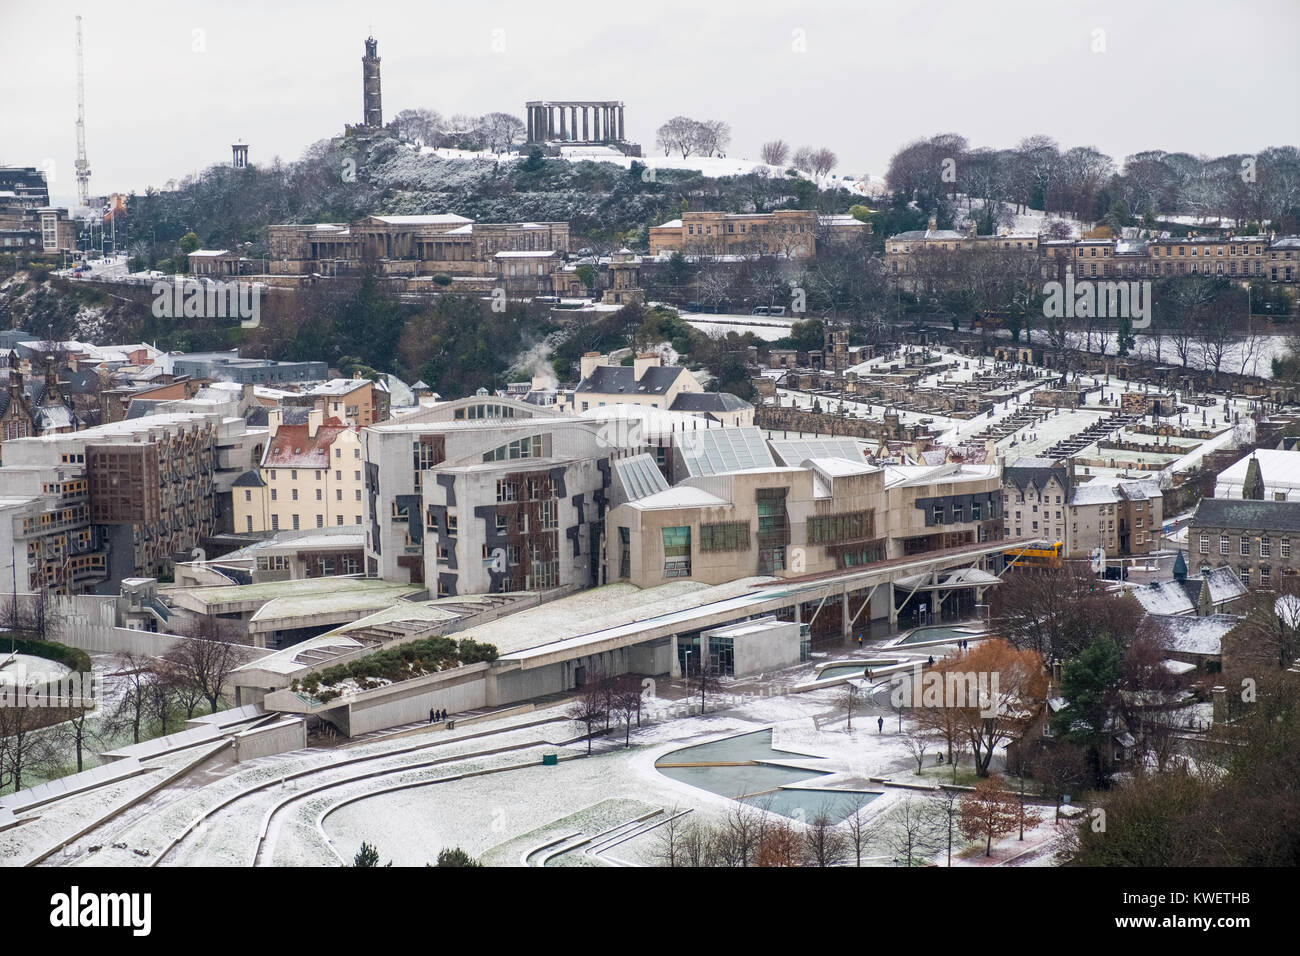 Schnee fällt auf die Stadt Edinburgh im Dezember. Blick auf die Skyline der Stadt in Richtung der schottische Parlamentsgebäude in Holyrood und Calton Hill. Stockfoto